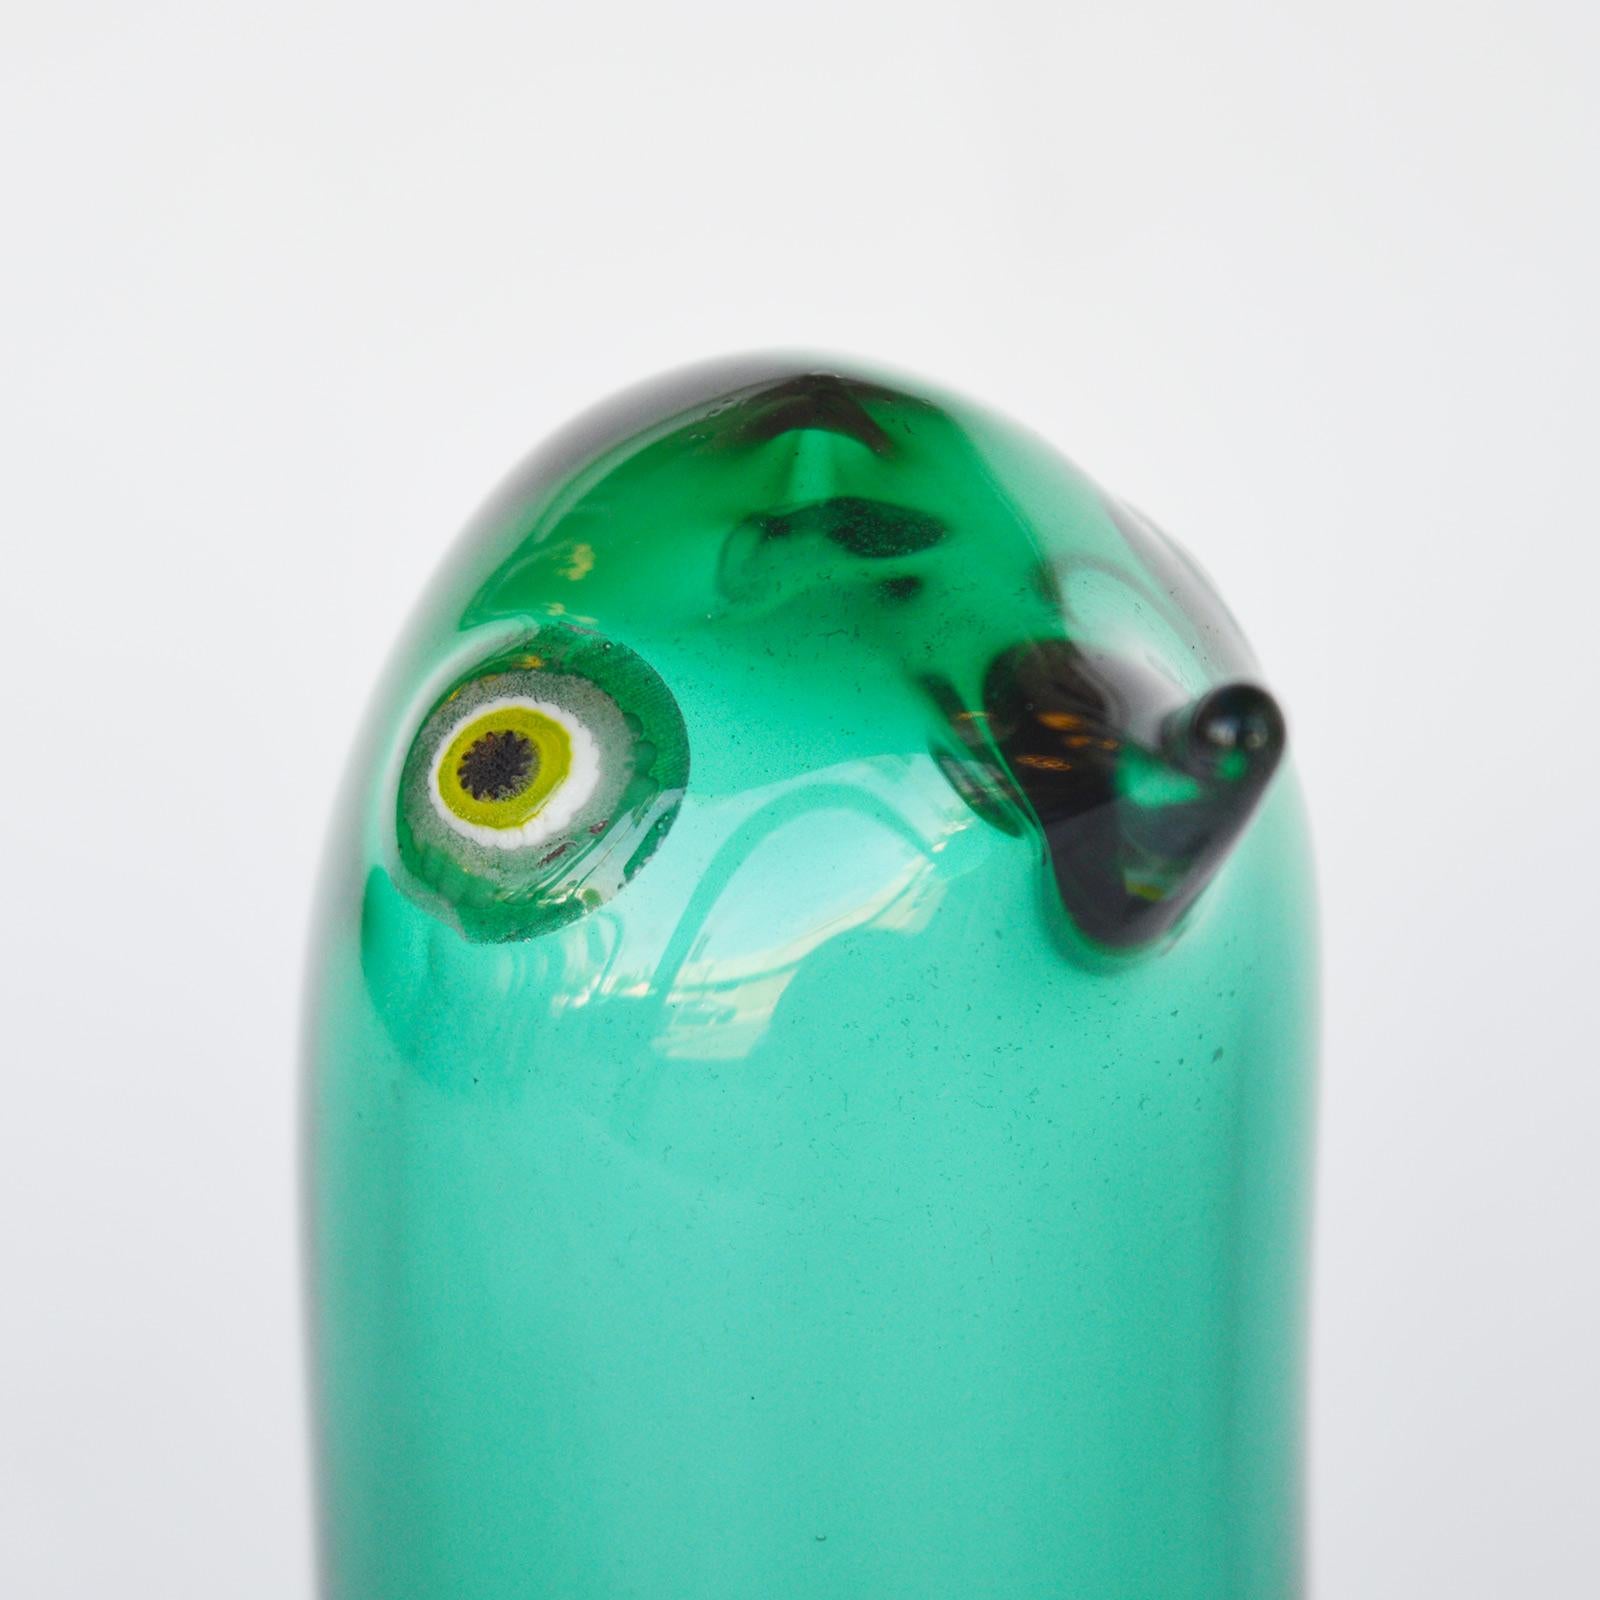 Pulcino Glass Bird by Alessandro Pianon, Vetreria Vistosi Murano 2